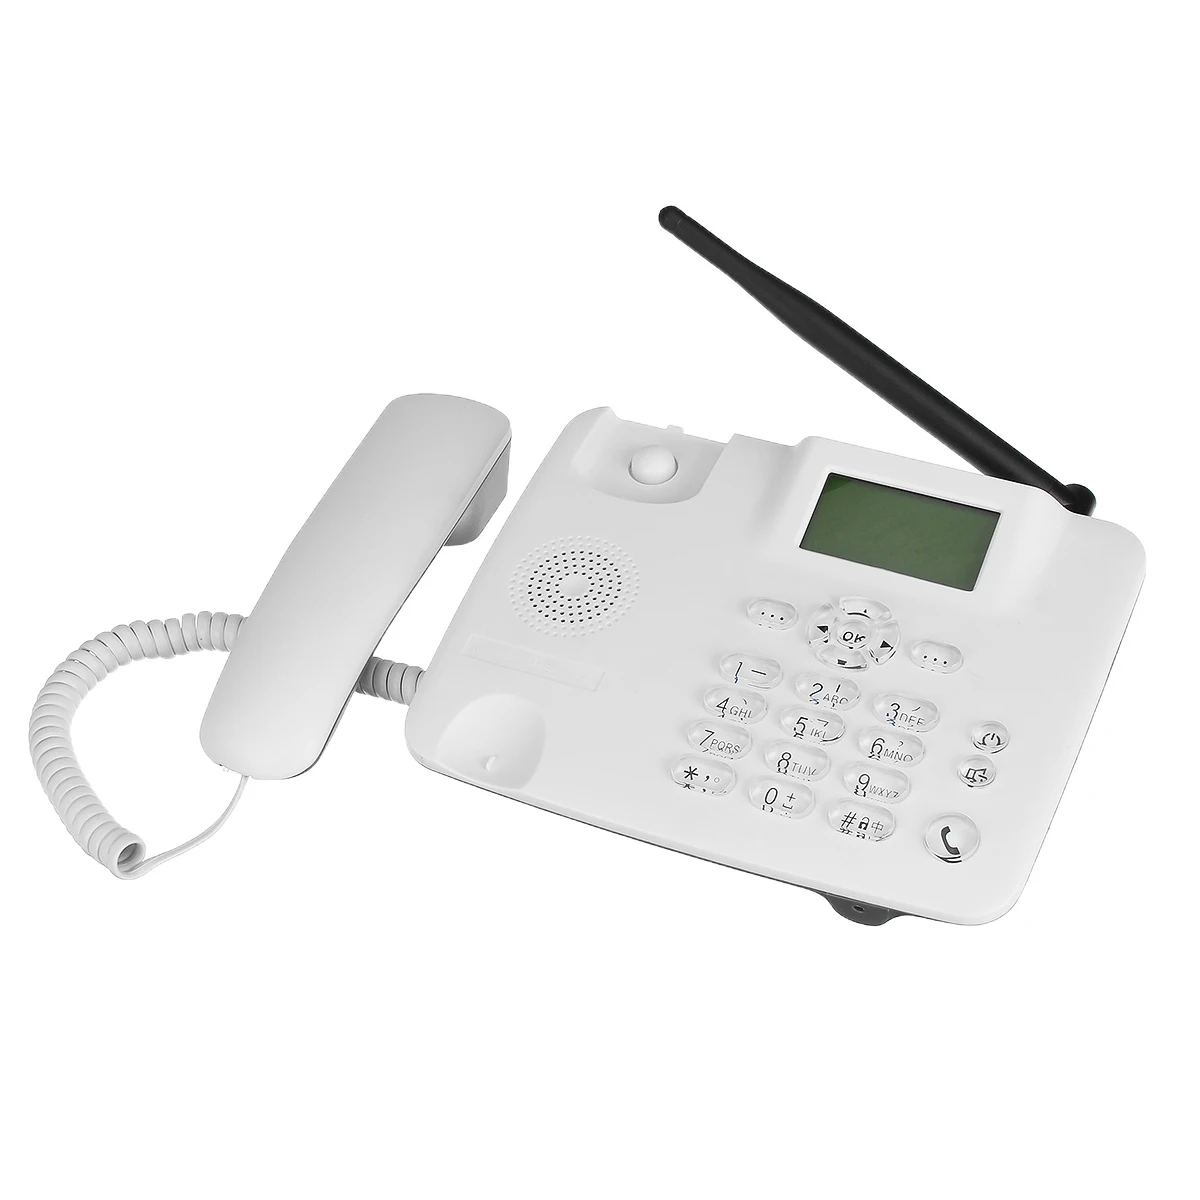 3g 2G исправленный сигнал GSM Беспроводная подставка для телефона мобильный телефон ЖК-экран sim-карта настольная Антенна Интерфейс входящий вызов дисплей 100-240 В